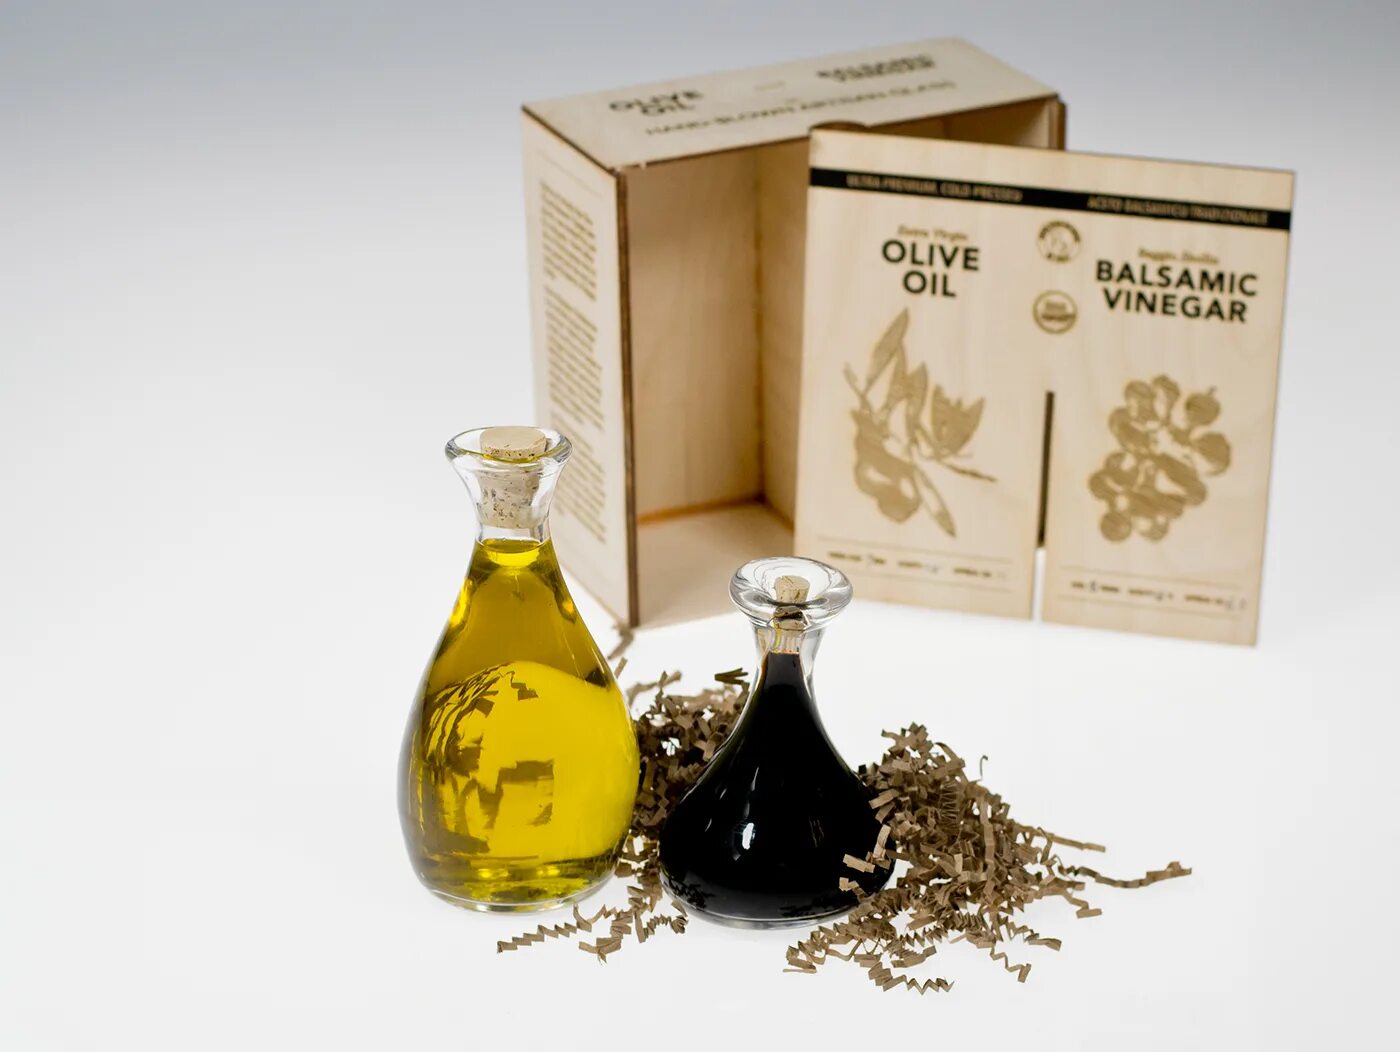 Olive Oil Packaging. Уксус в упаковке. Olive package Design. Оливковое масло в деревянной упаковке из Израиля.